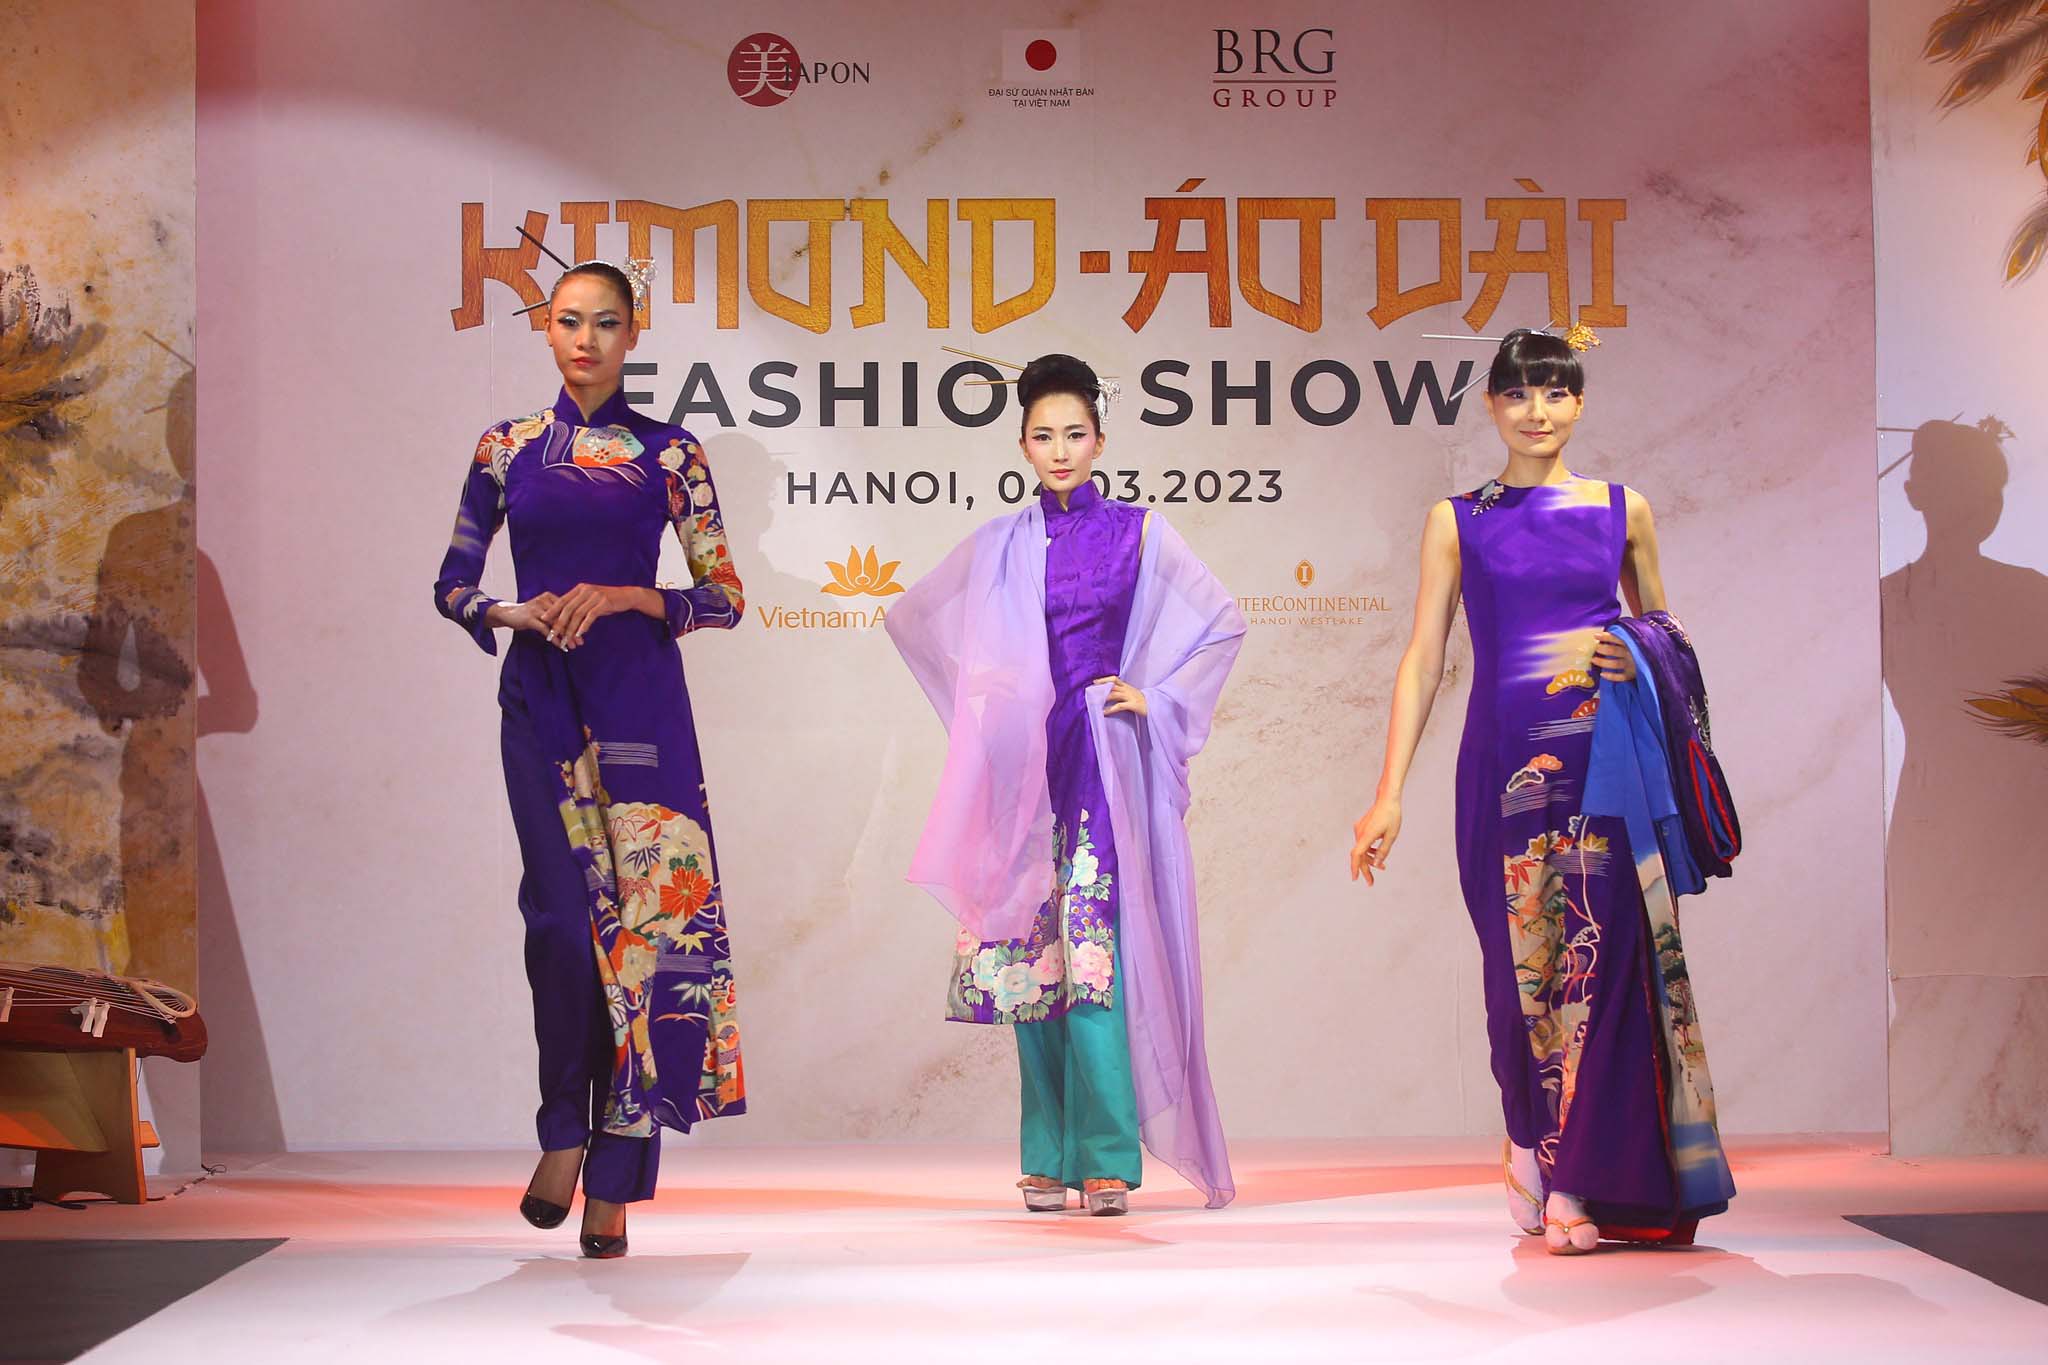 “Kimono - Aodai Fashion Show” - chương trình mở màn chuỗi sự kiện giao lưu văn hóa nghệ thuật đặc biệt kỷ niệm 50 năm thiết lập quan hệ ngoại giao Việt Nam - Nhật Bản (1973-2023), do tổ chức phi lợi nhuận Be - Japon phối hợp với Đại sứ quán Nhật Bản tại Việt Nam và Tập đoàn BRG đồng tổ chức đã gây ấn tượng mạnh với cả những tín đồ đam mê thời trang. 